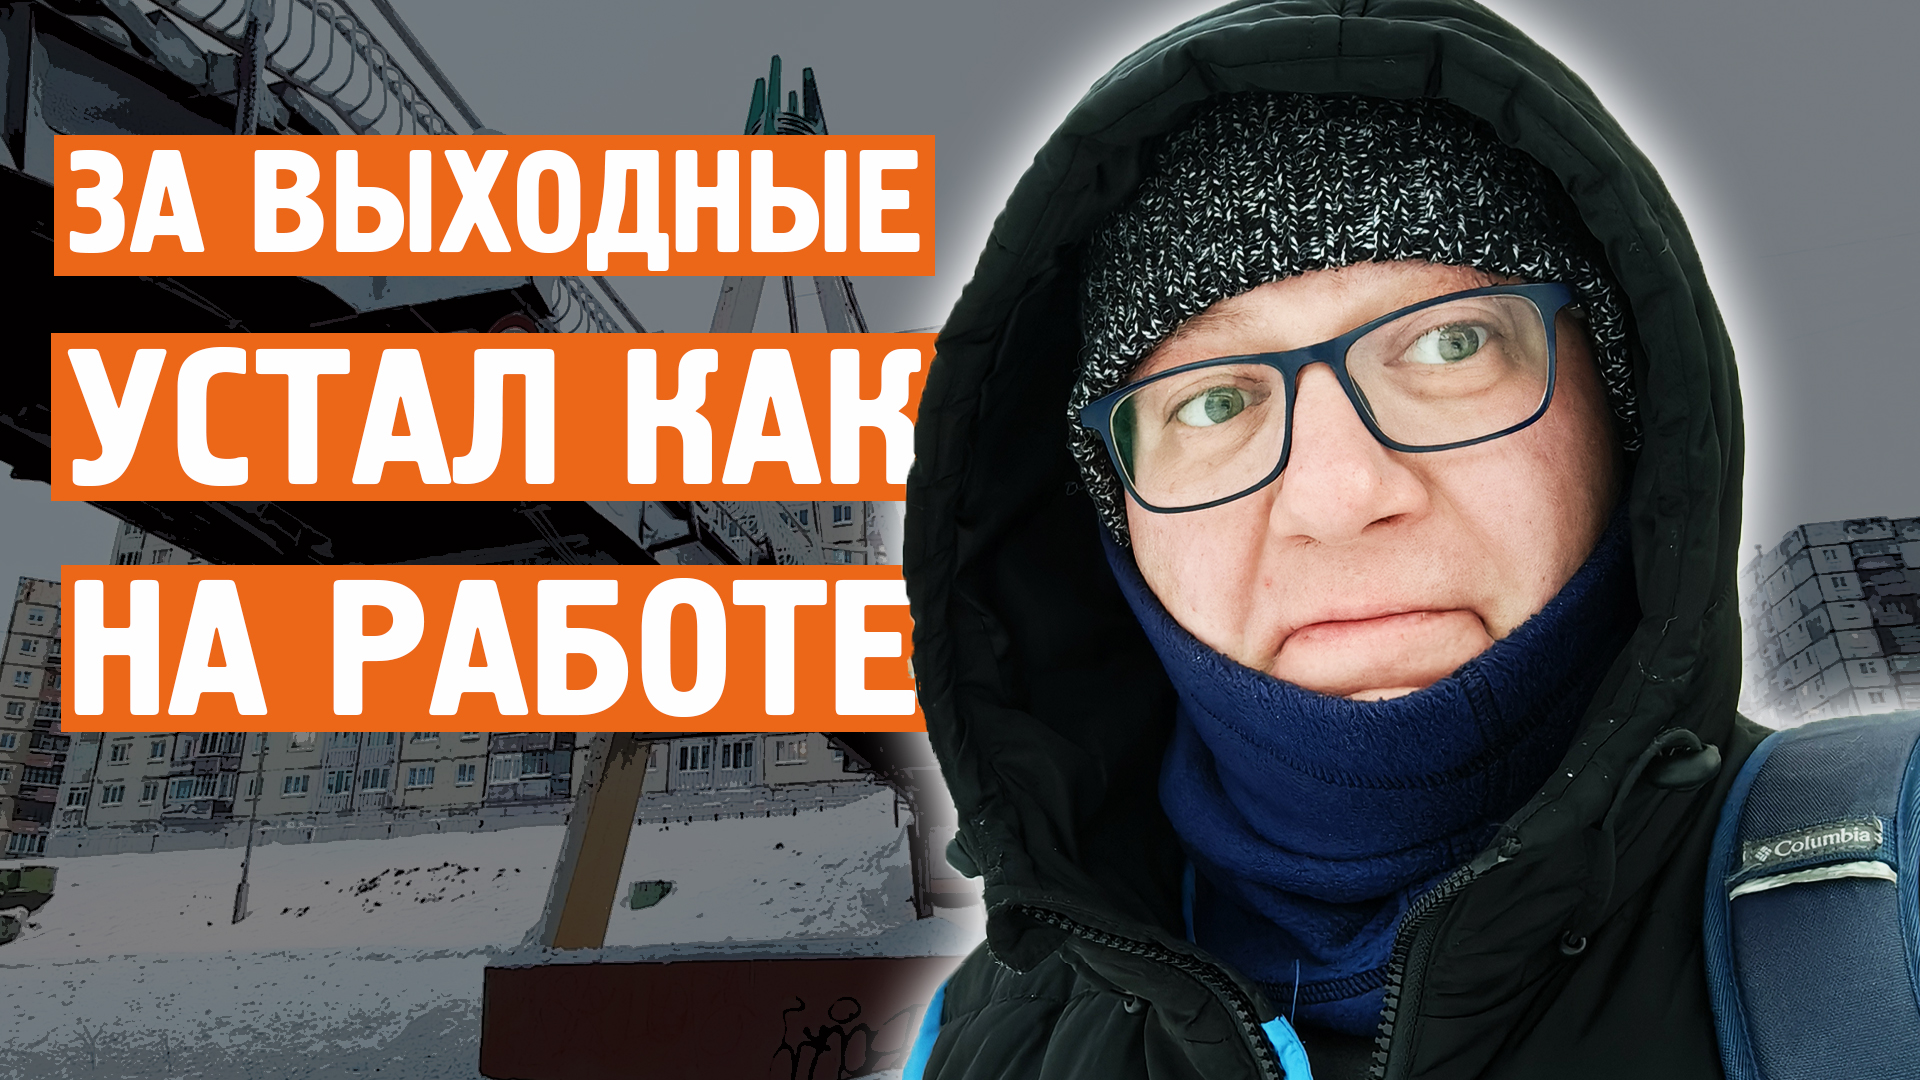 За выходные устал / 8 марта / Яндекс станция / Норильск блог